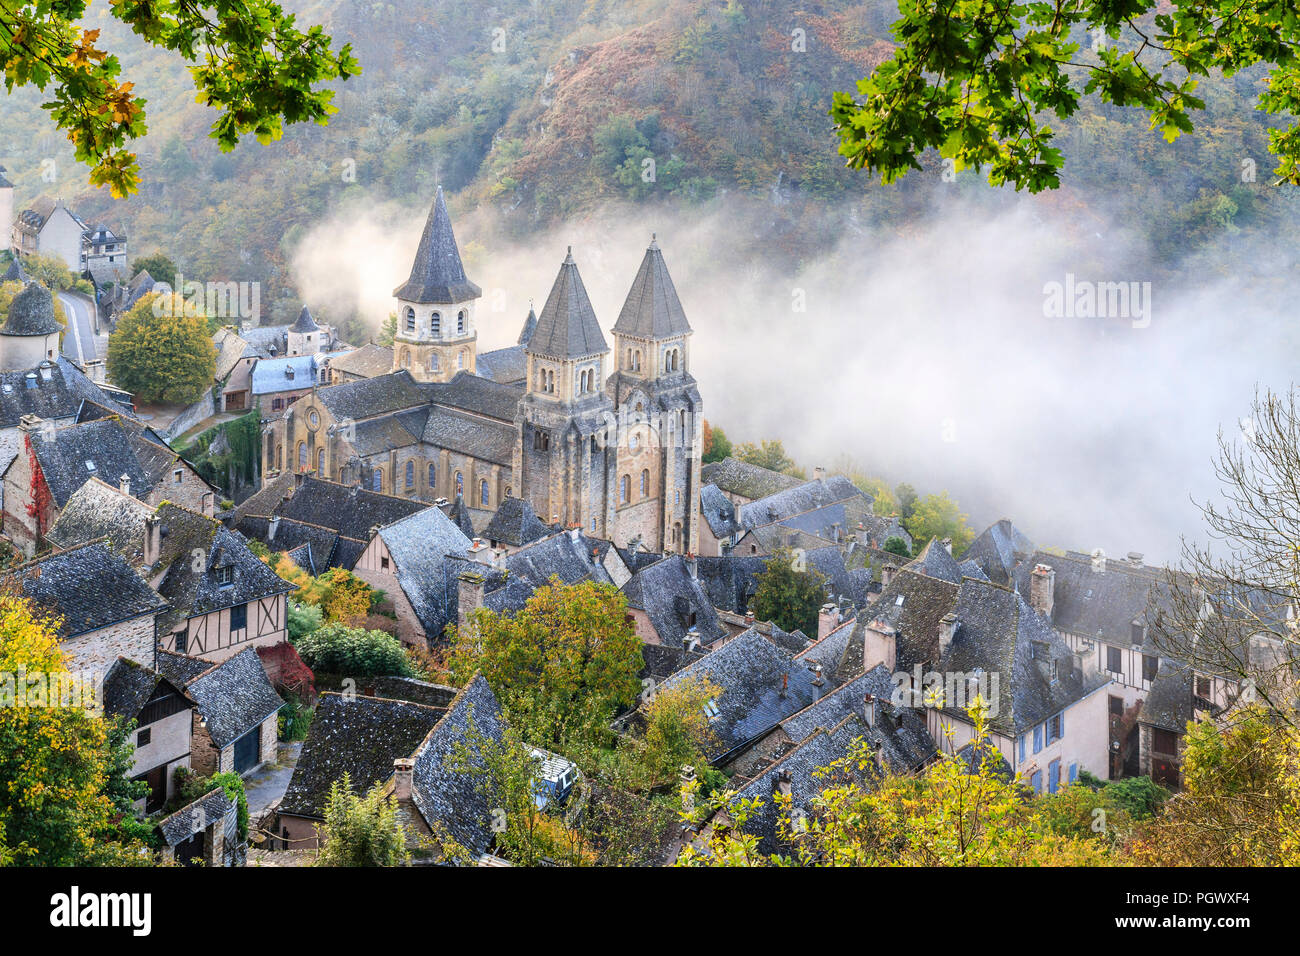 Francia, Aveyron, Conques, etiquetados Les Plus Beaux aldeas de France (Los pueblos más bellos de Francia), parada en el Camino de Santiago, una aldea Foto de stock